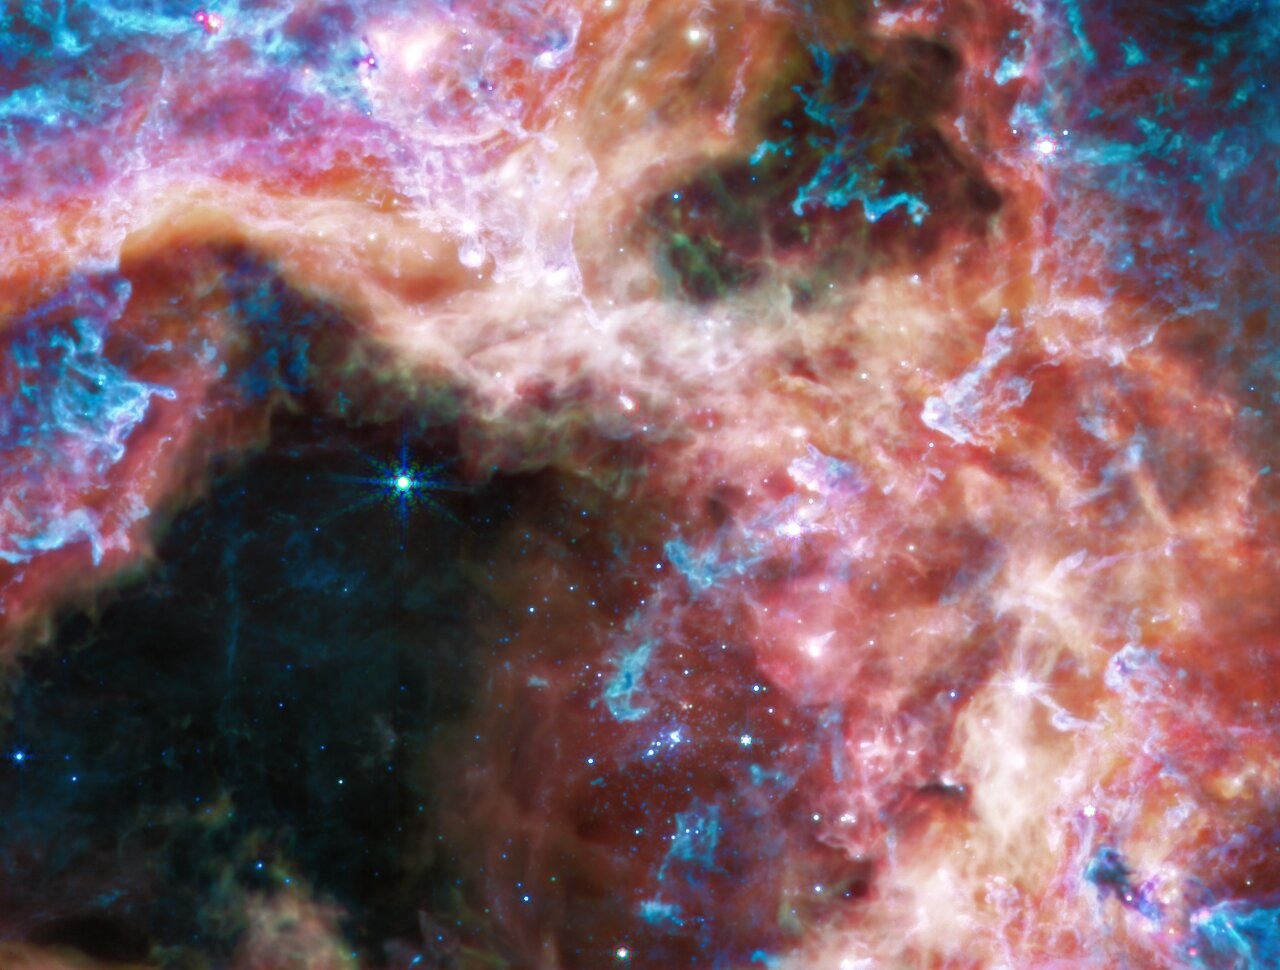 Webb heeft de stellaire kraamkamer Doradus 30 (alias de Tarantulanevel) gefotografeerd